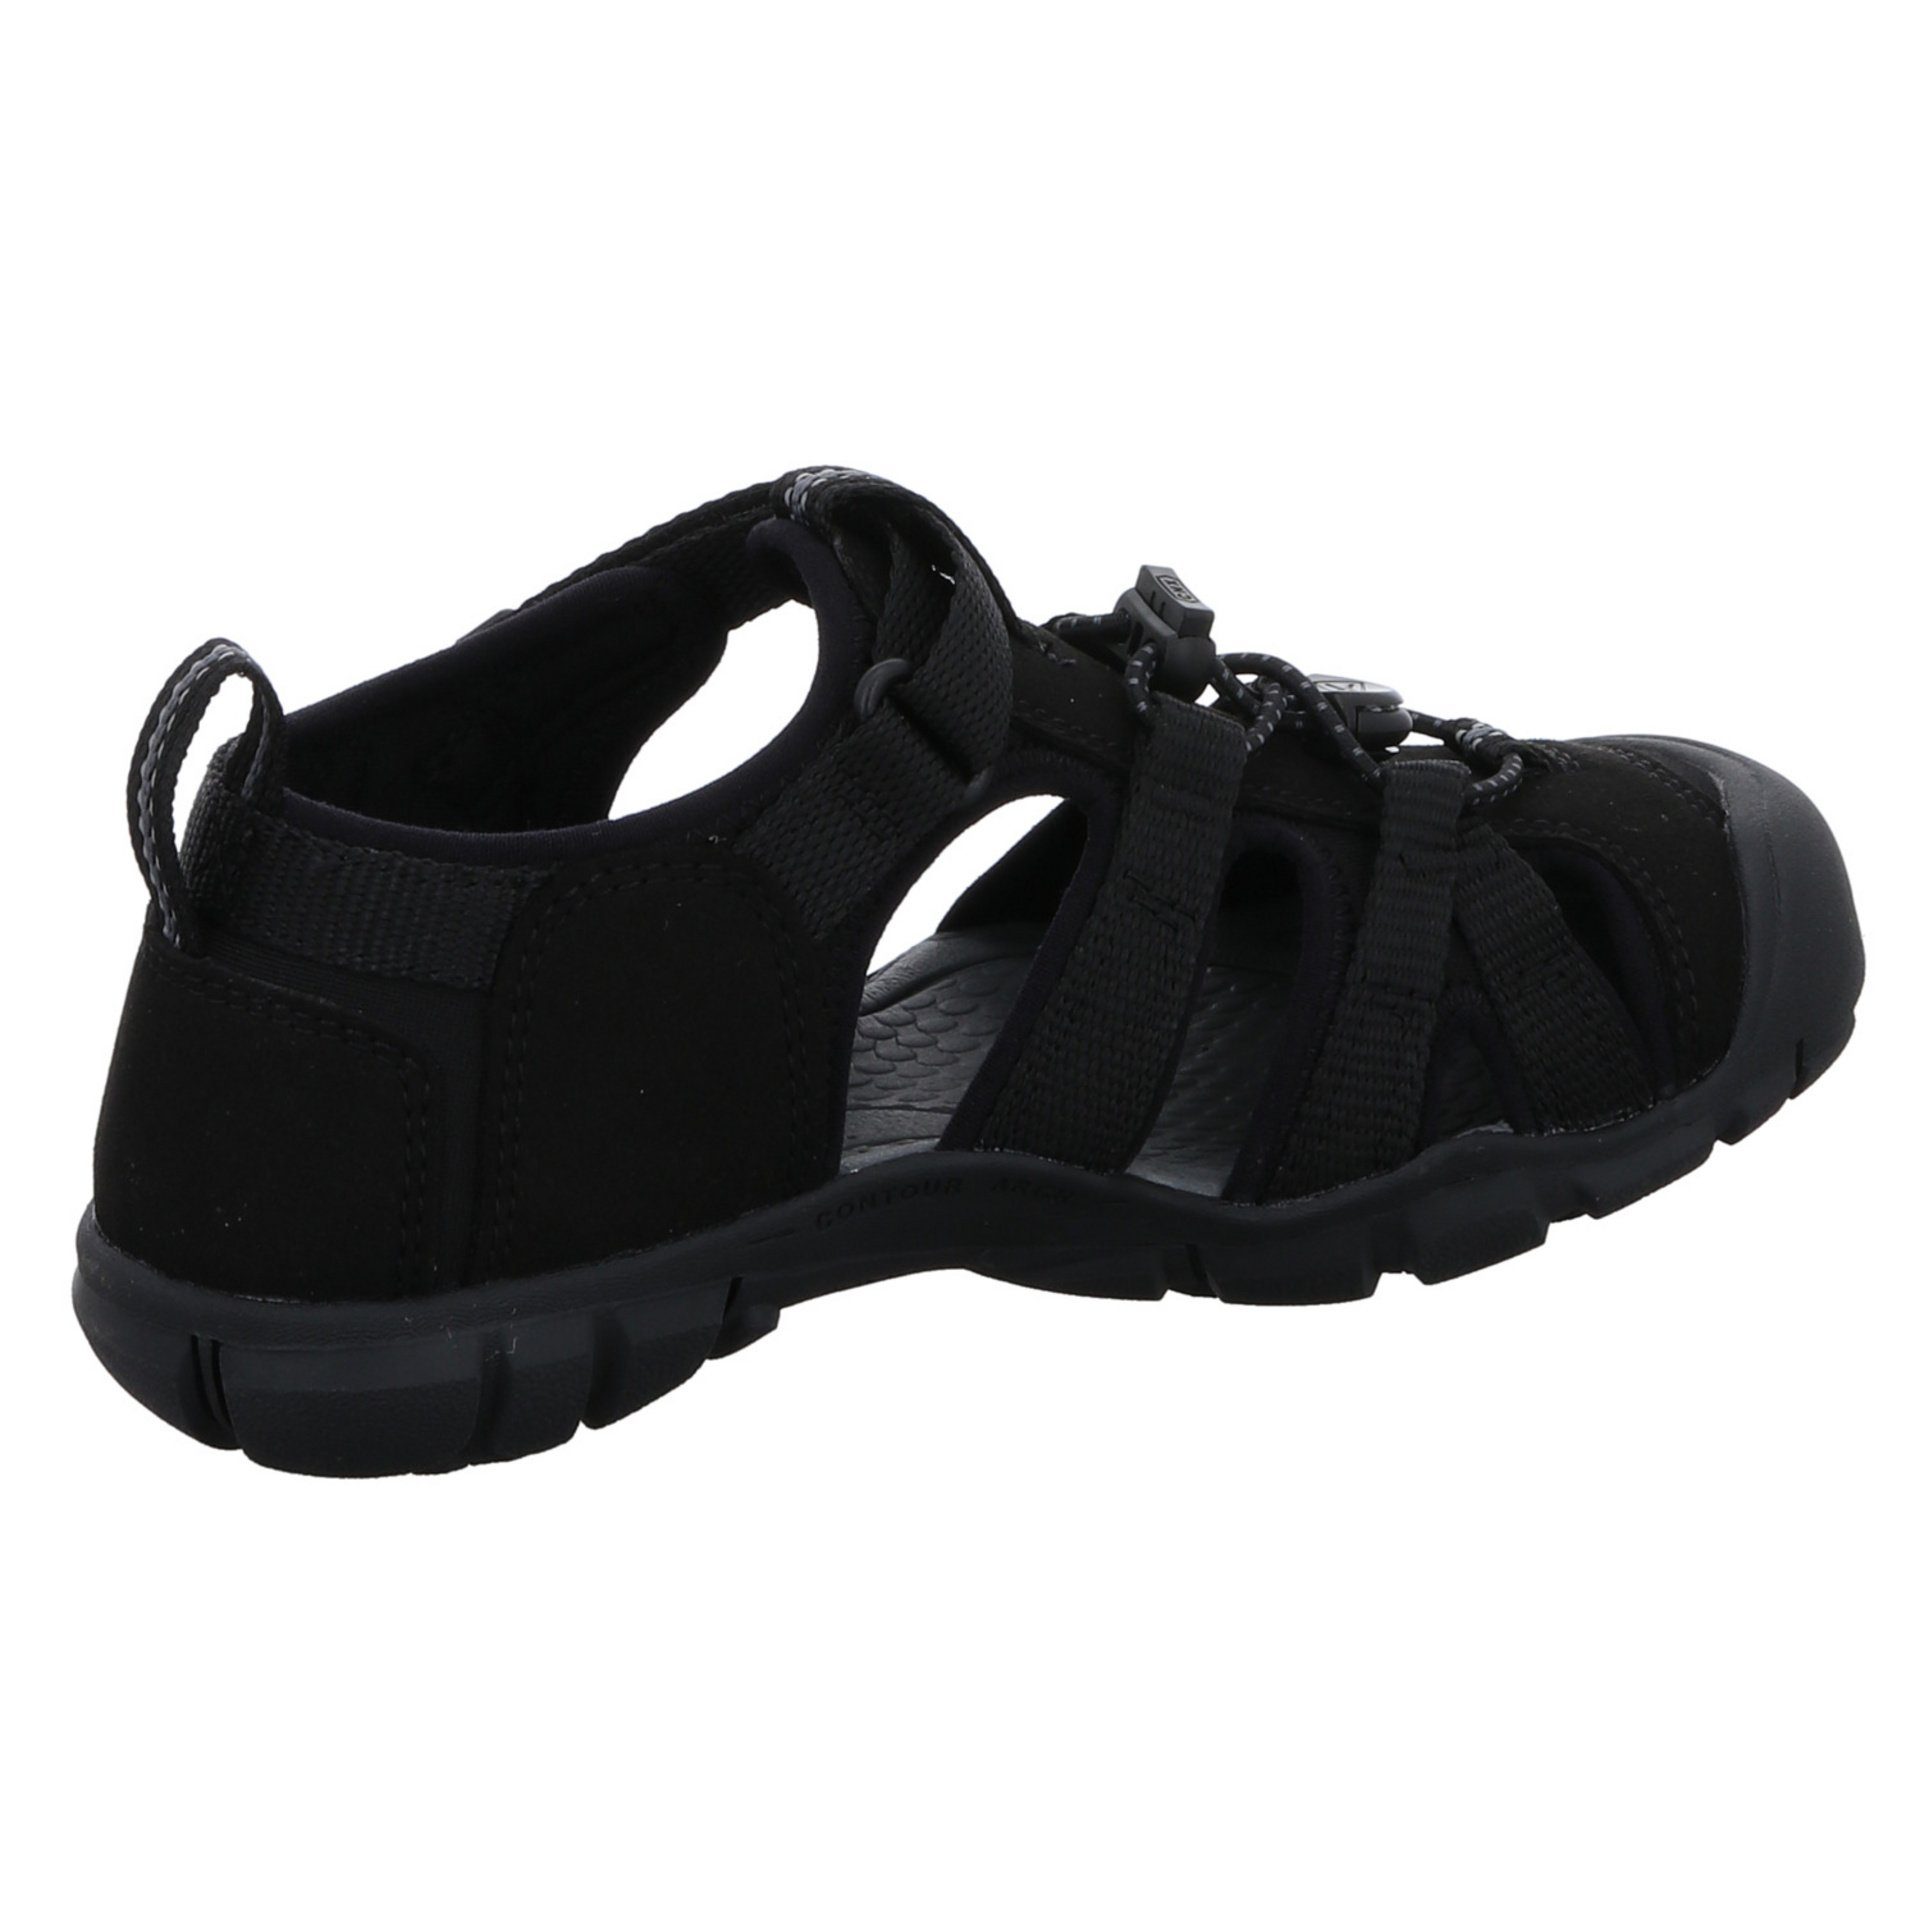 Keen Jungen Sandalen dunkel Schuhe Textil schwarz Sandale